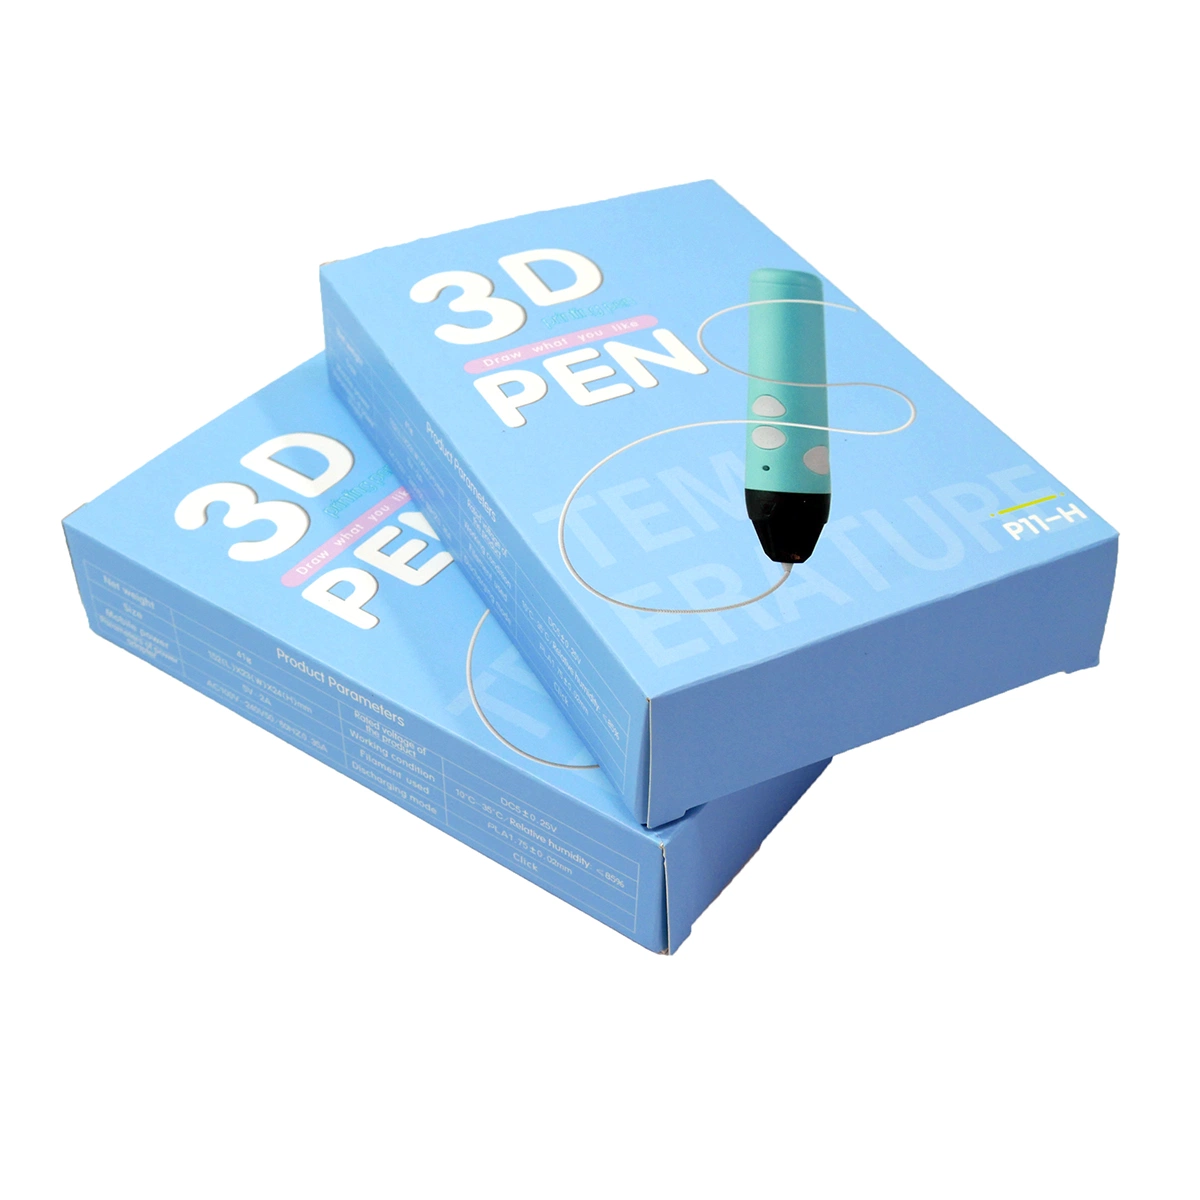 Commerce de gros populaires Impression 3D de bricolage stylo Prix bon marché de haute qualité